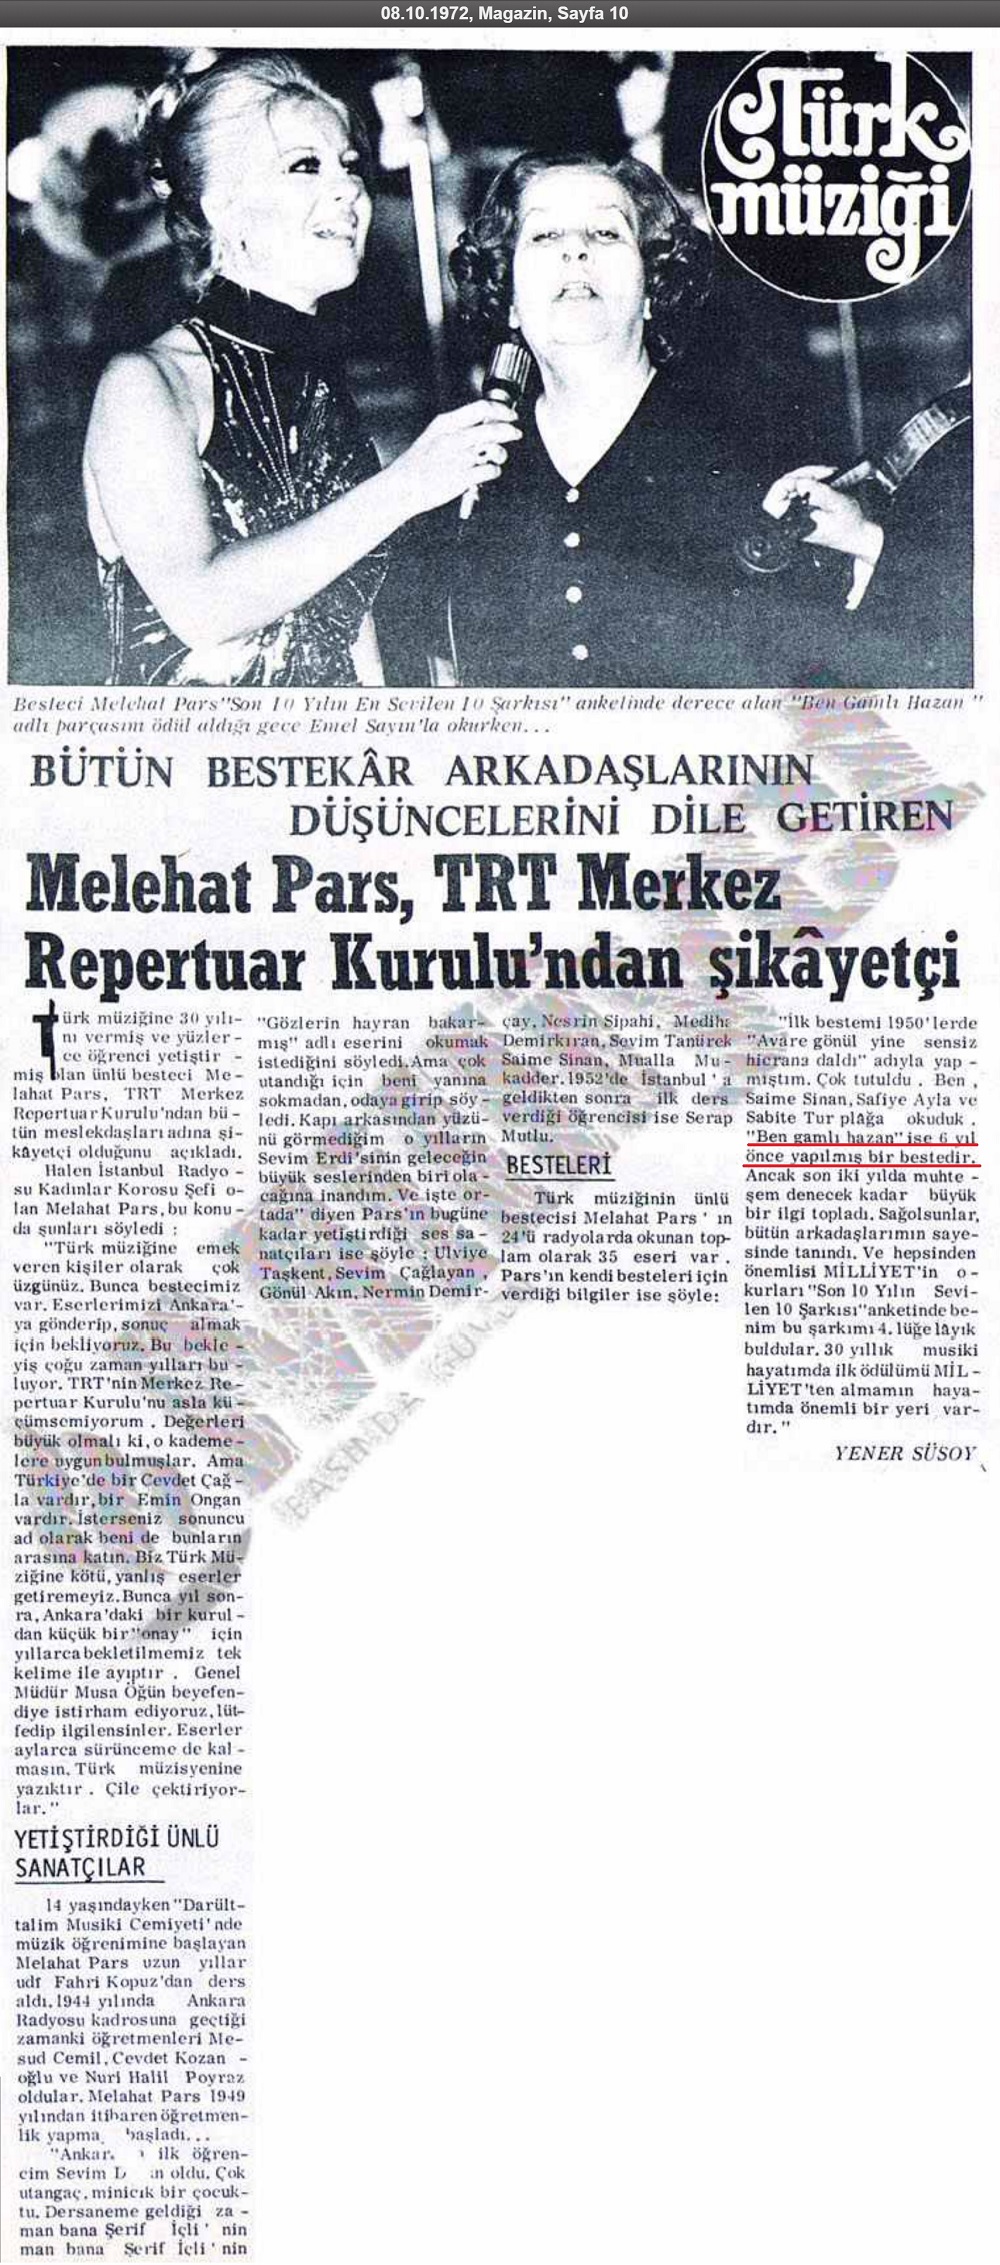 Milliyet Gazetesinin 8 Ekim 1972 tarihli "Melahat Pars TRT Merkez Repertuar Kurulu'ndan Şikâyetçi" başlıklı haber